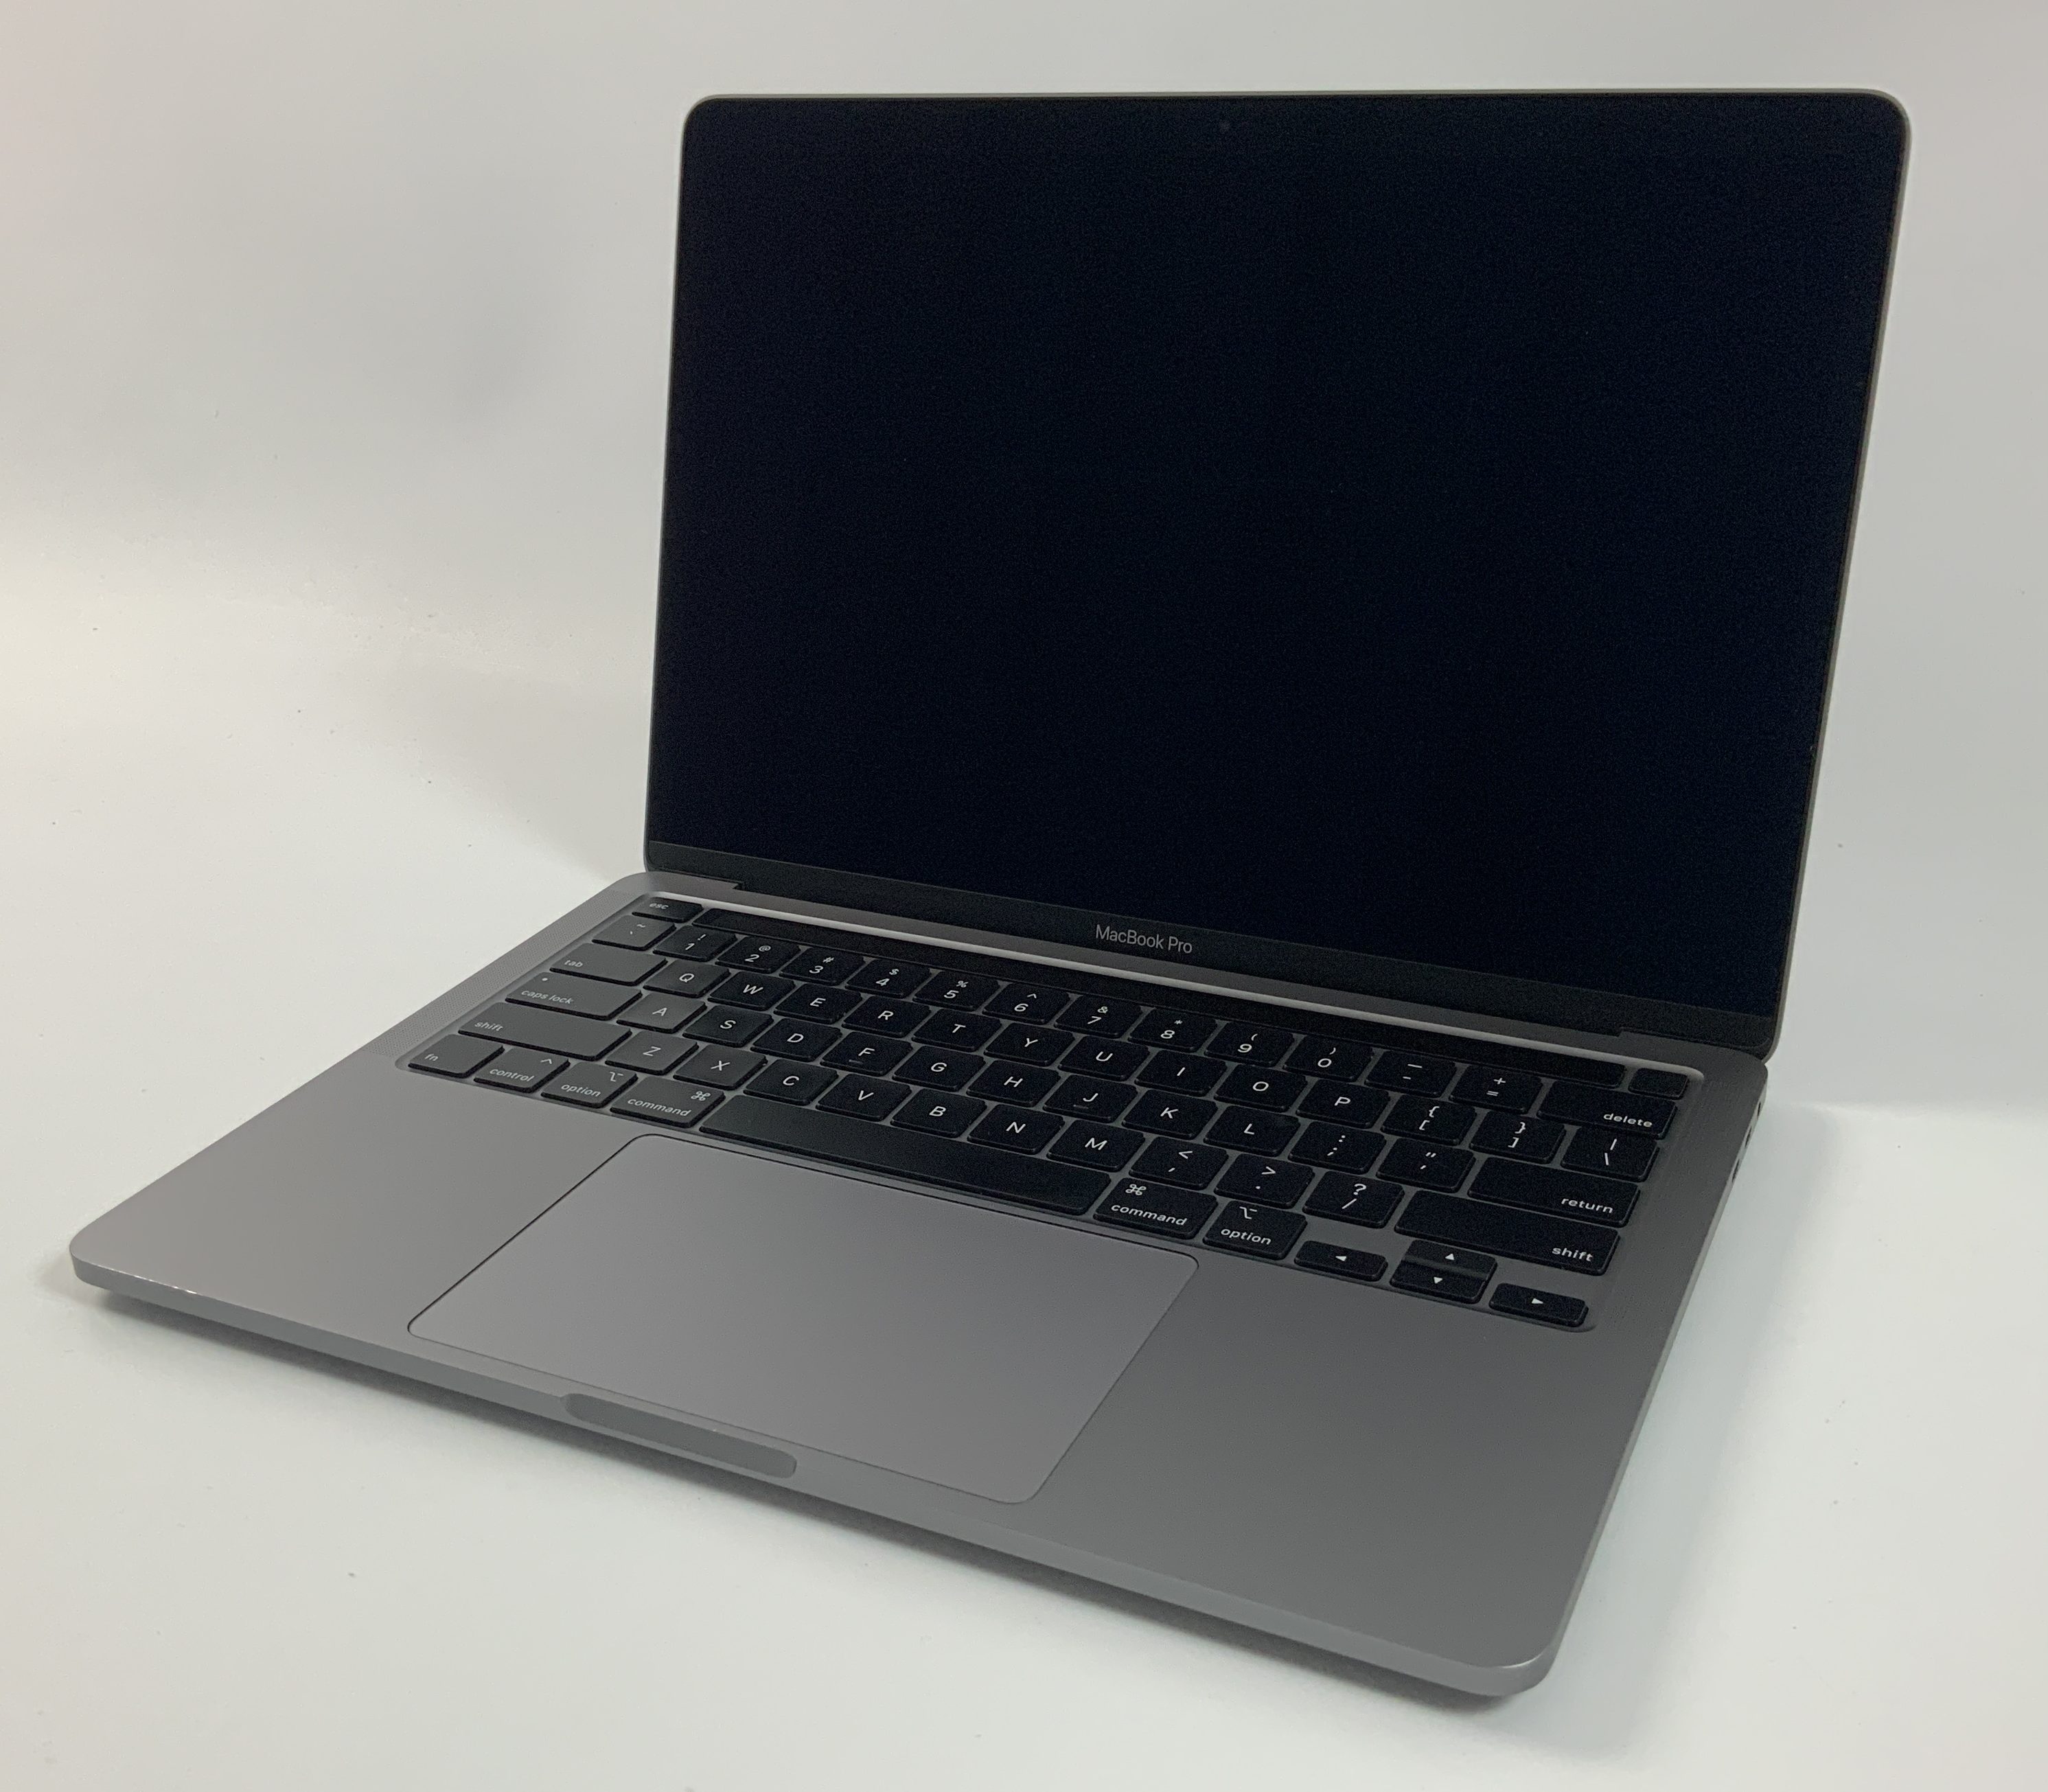 MacBook Pro 13" 4TBT Mid 2020 (Intel Quad-Core i5 2.0 GHz 16 GB RAM 512 GB SSD), Space Gray, Intel Quad-Core i5 2.0 GHz, 16 GB RAM, 512 GB SSD, immagine 1